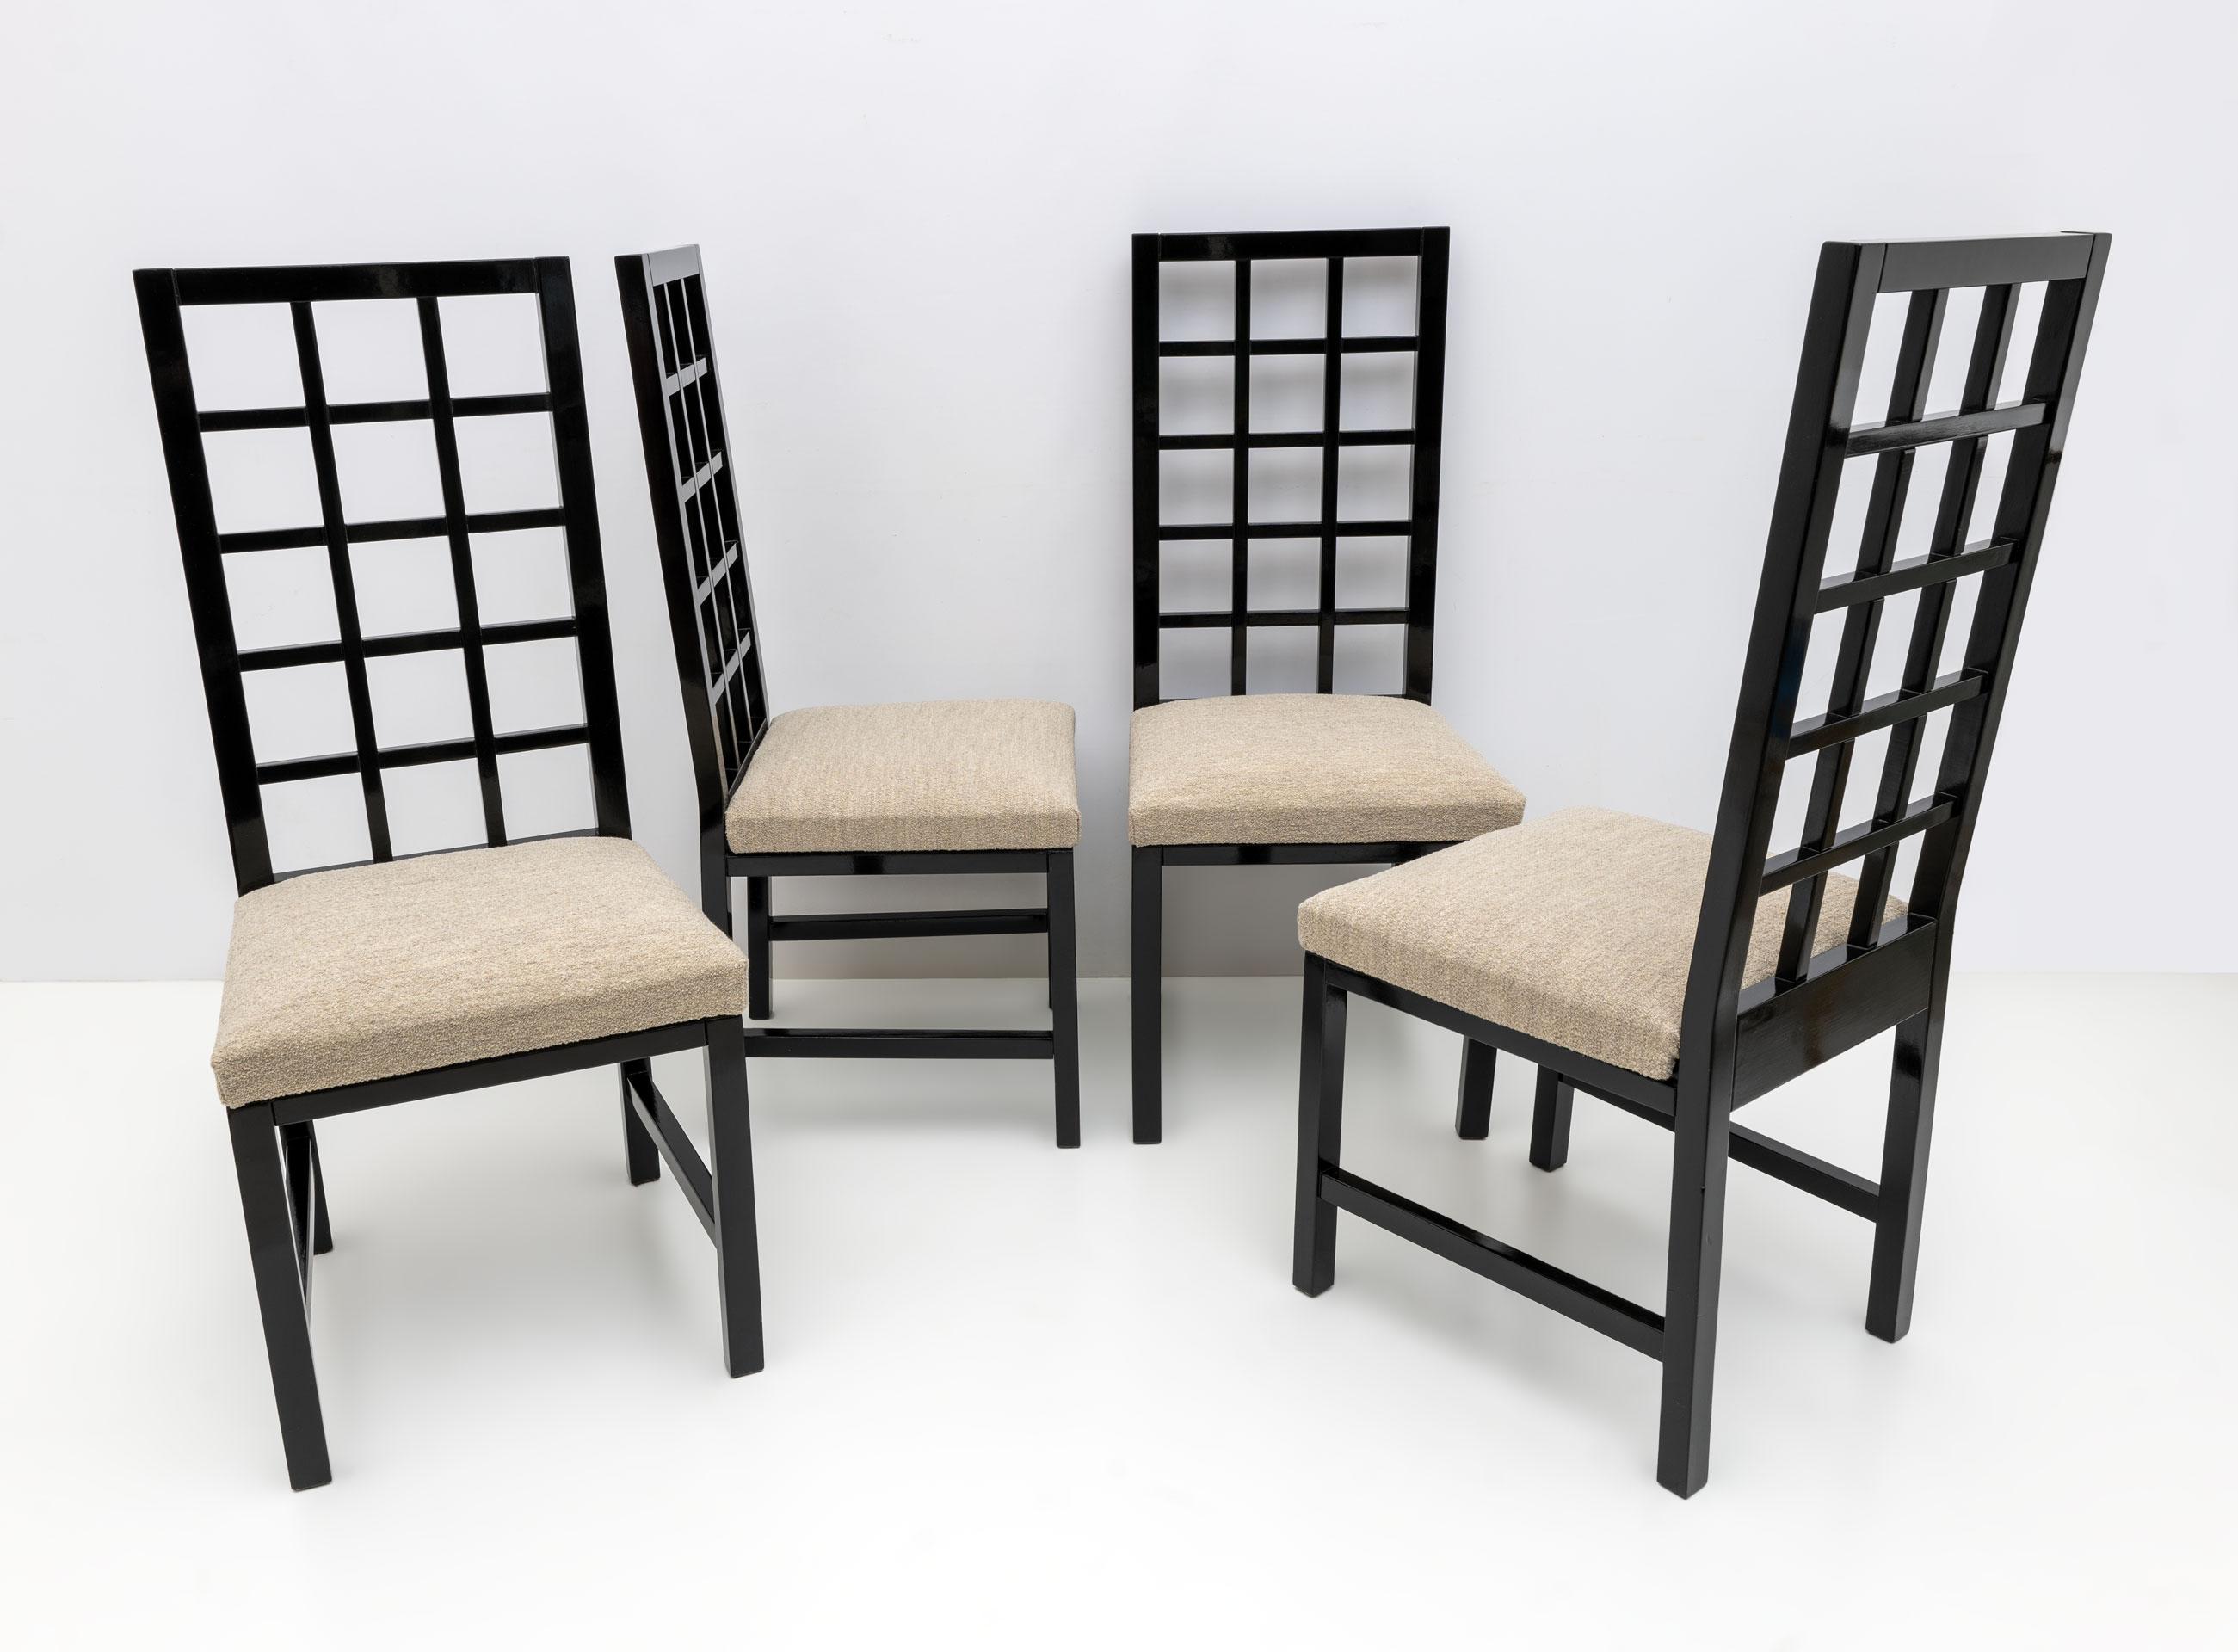 Dans le style de l'architecte écossais Charles Rennie Mackintosh. Ces quatre chaises, solidement construites en bois laqué noir, sont recouvertes d'un revêtement en bouclette ivoire, fin des années 1970.